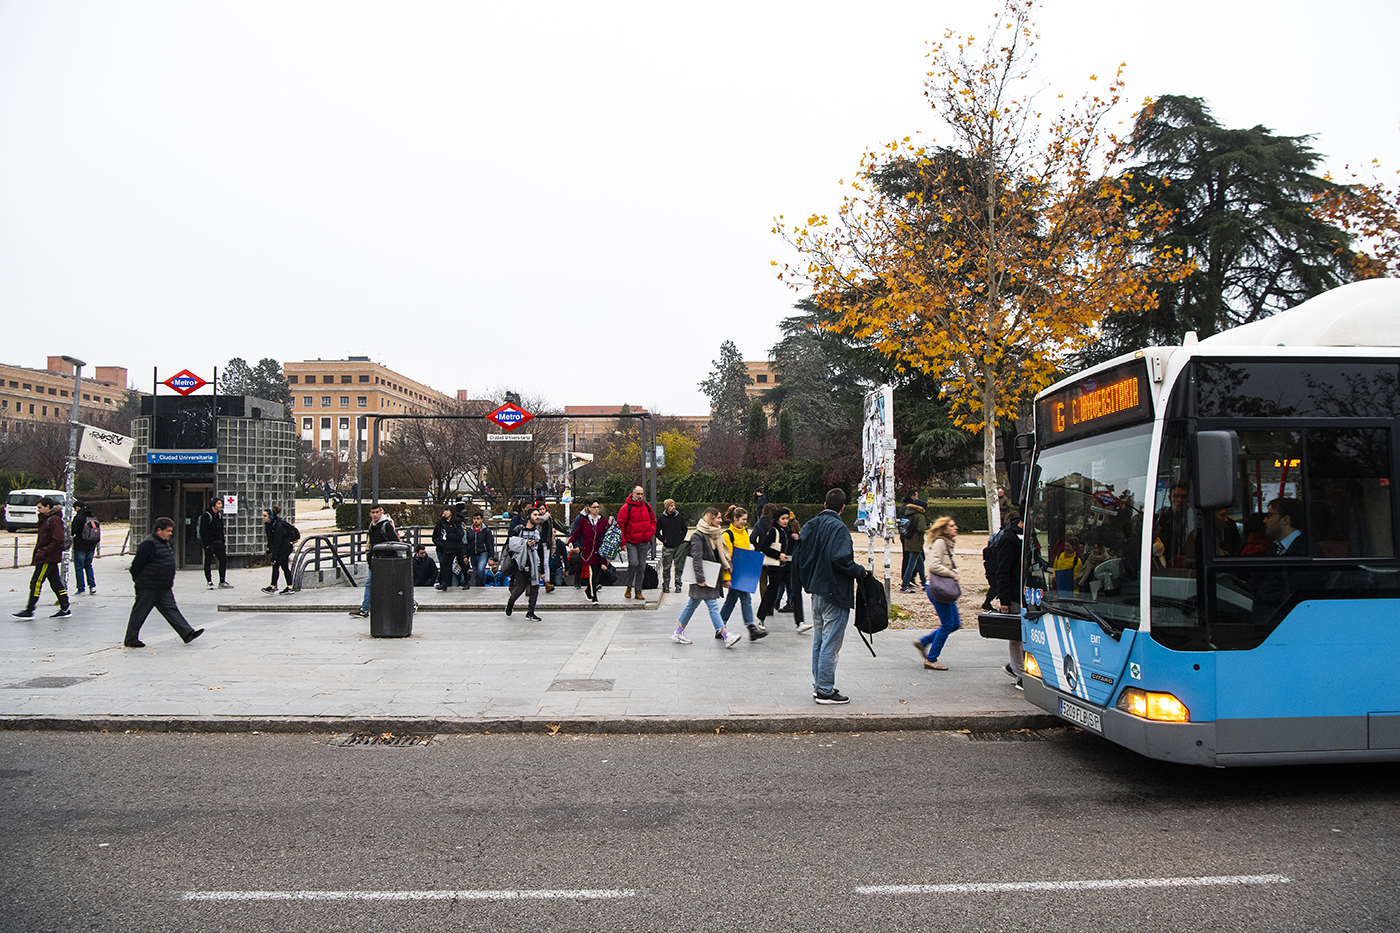 Estudiantes caminando al lado de una estación de metro y un autobús urbano